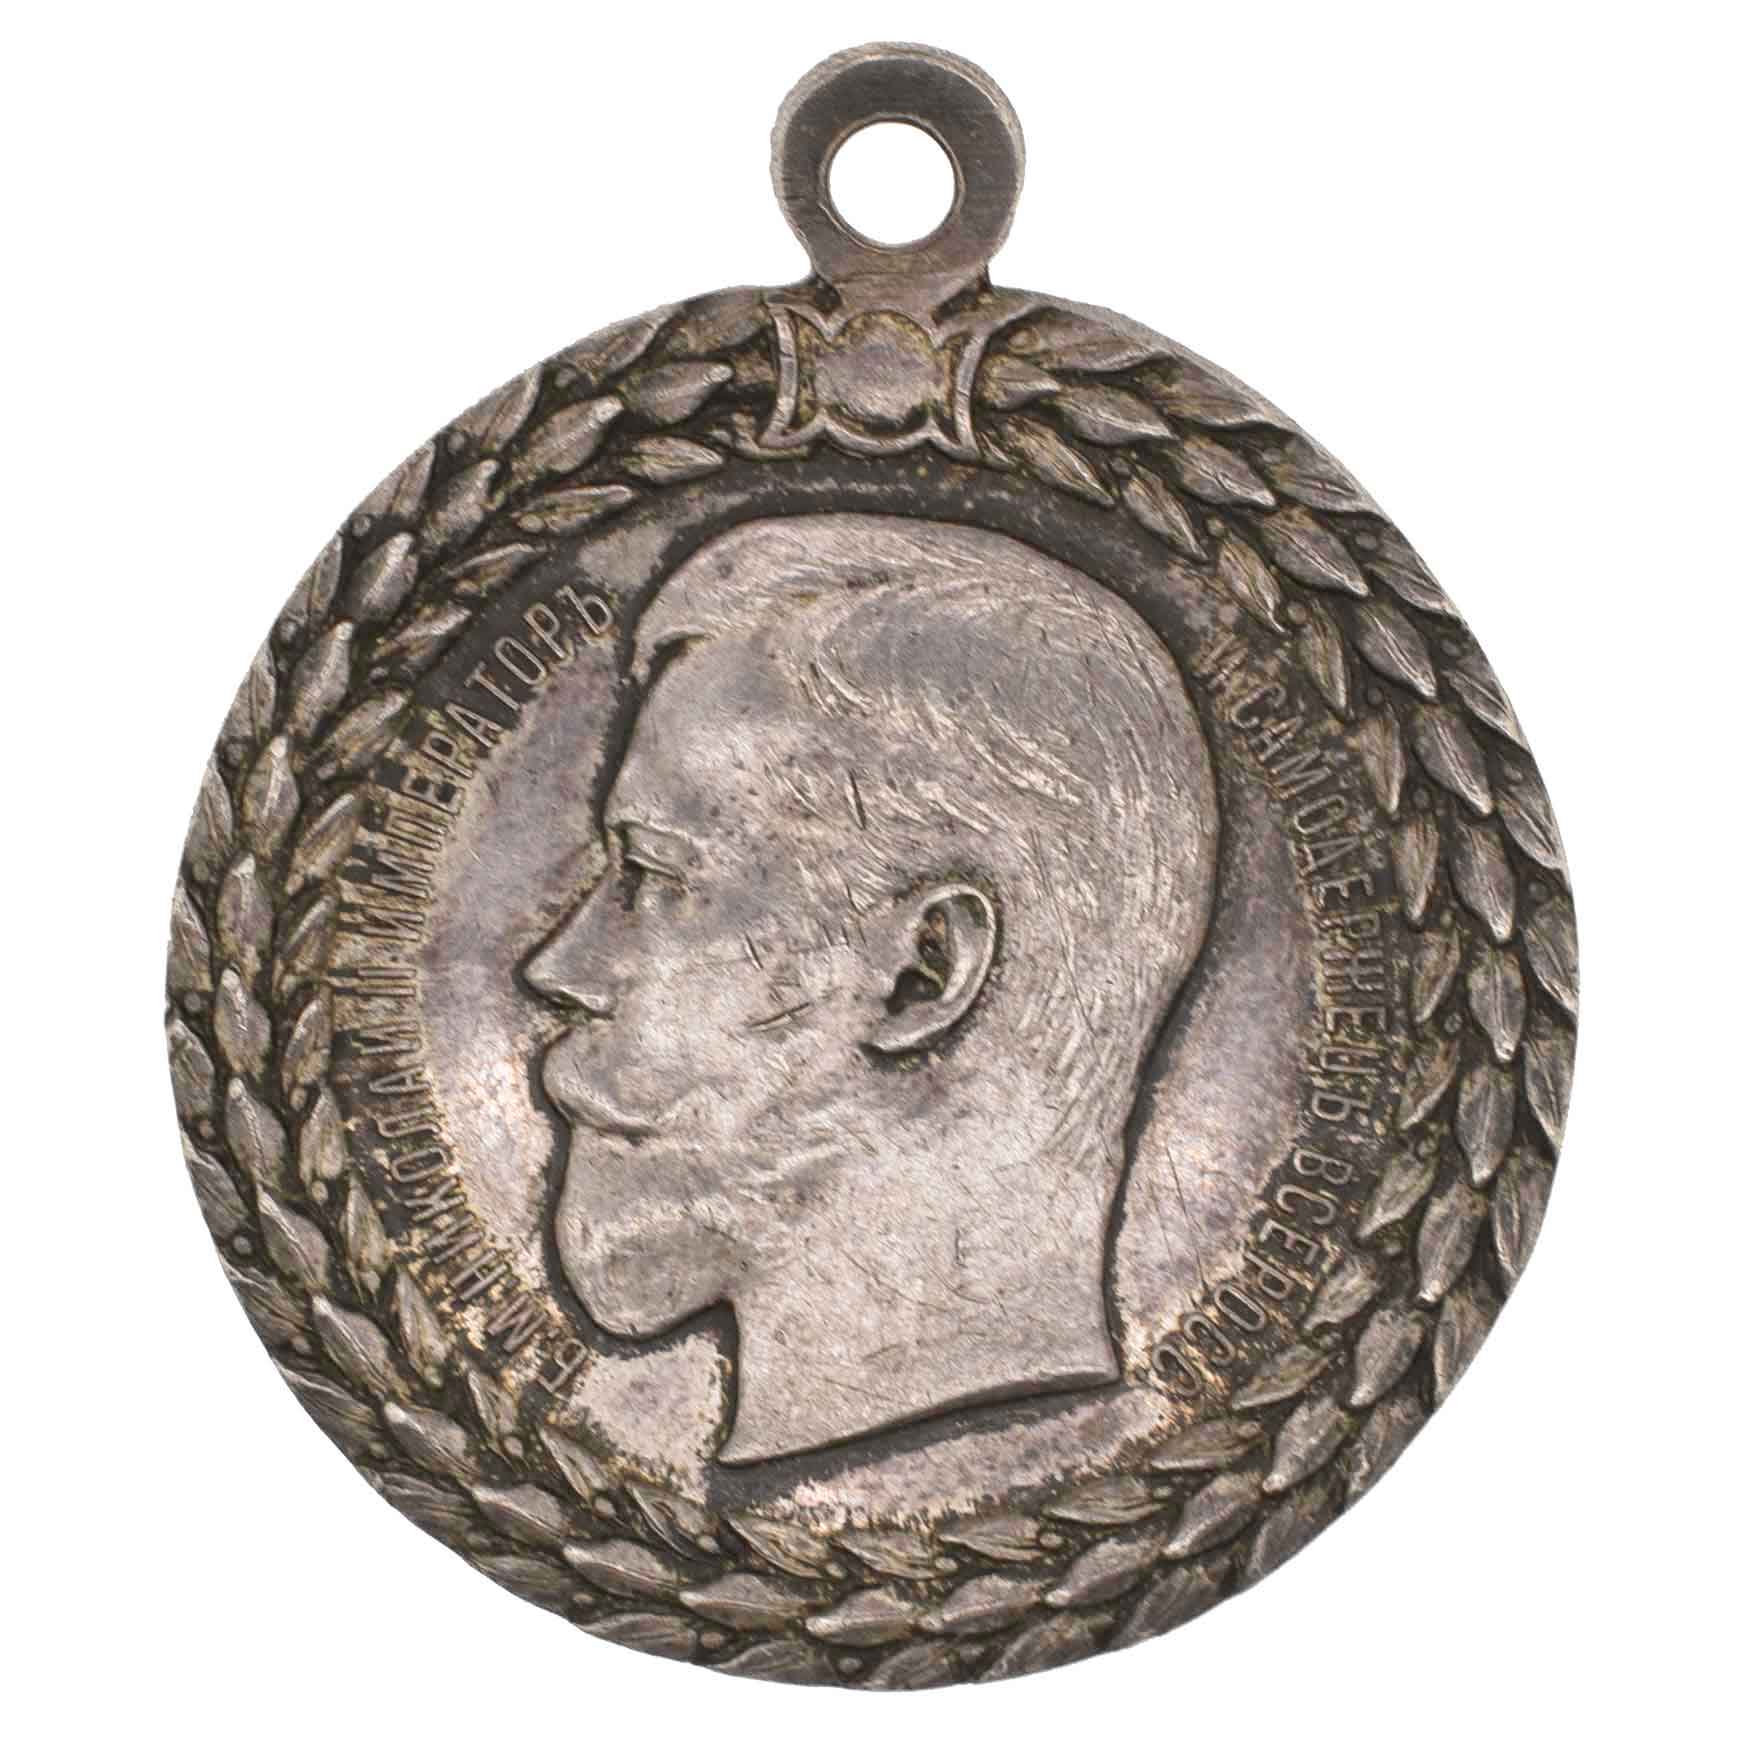 Медаль "За беспорочную службу в полиции" с портретом Императора Николая II.